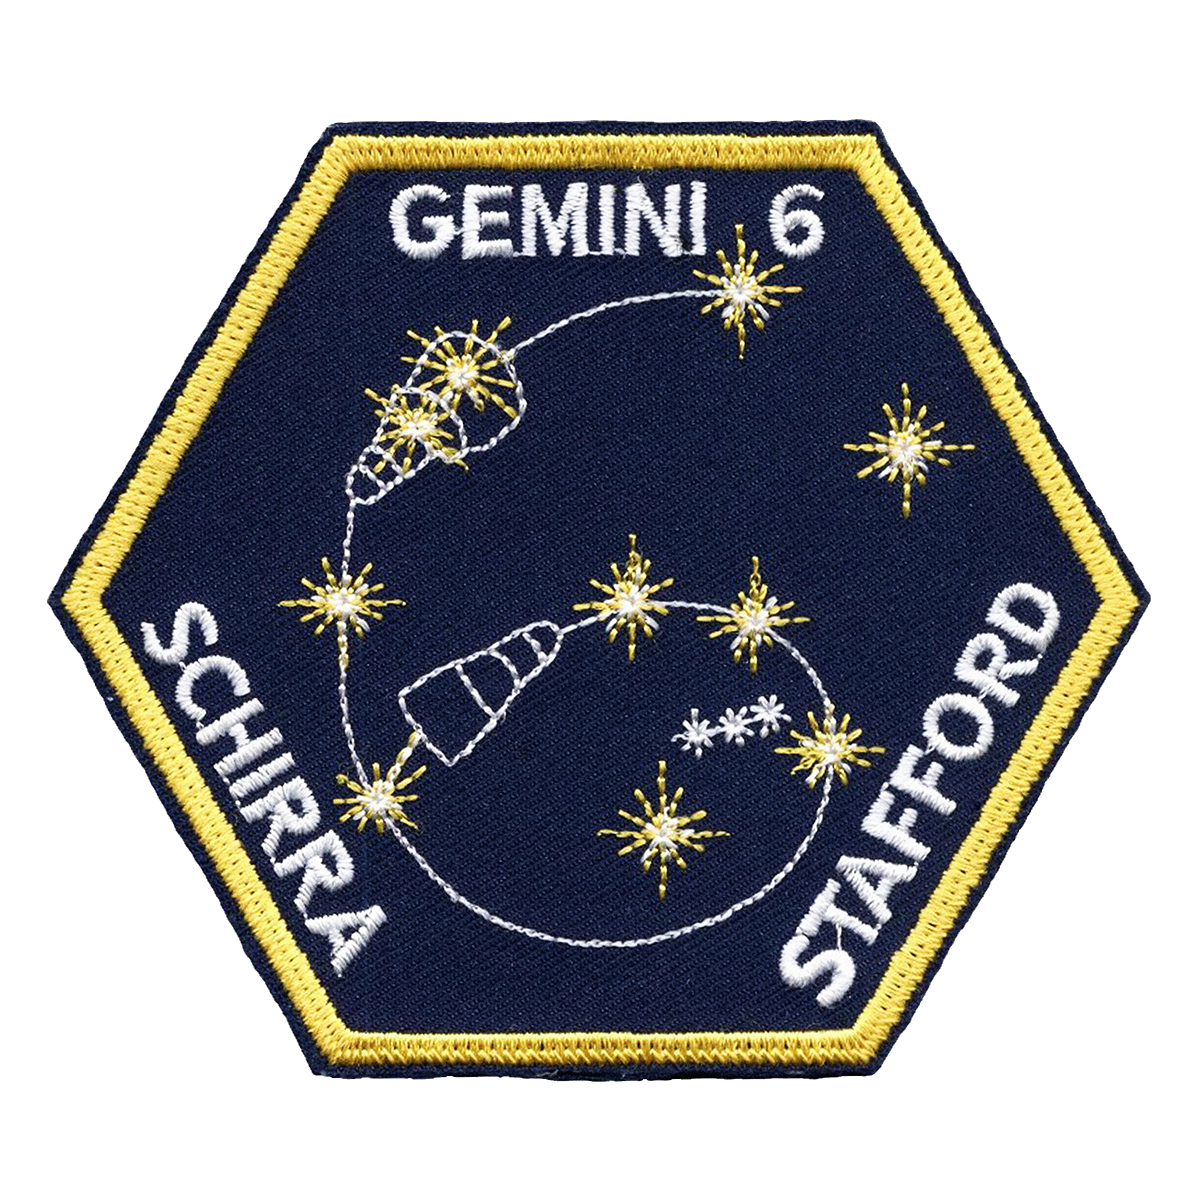 Gemini 6A